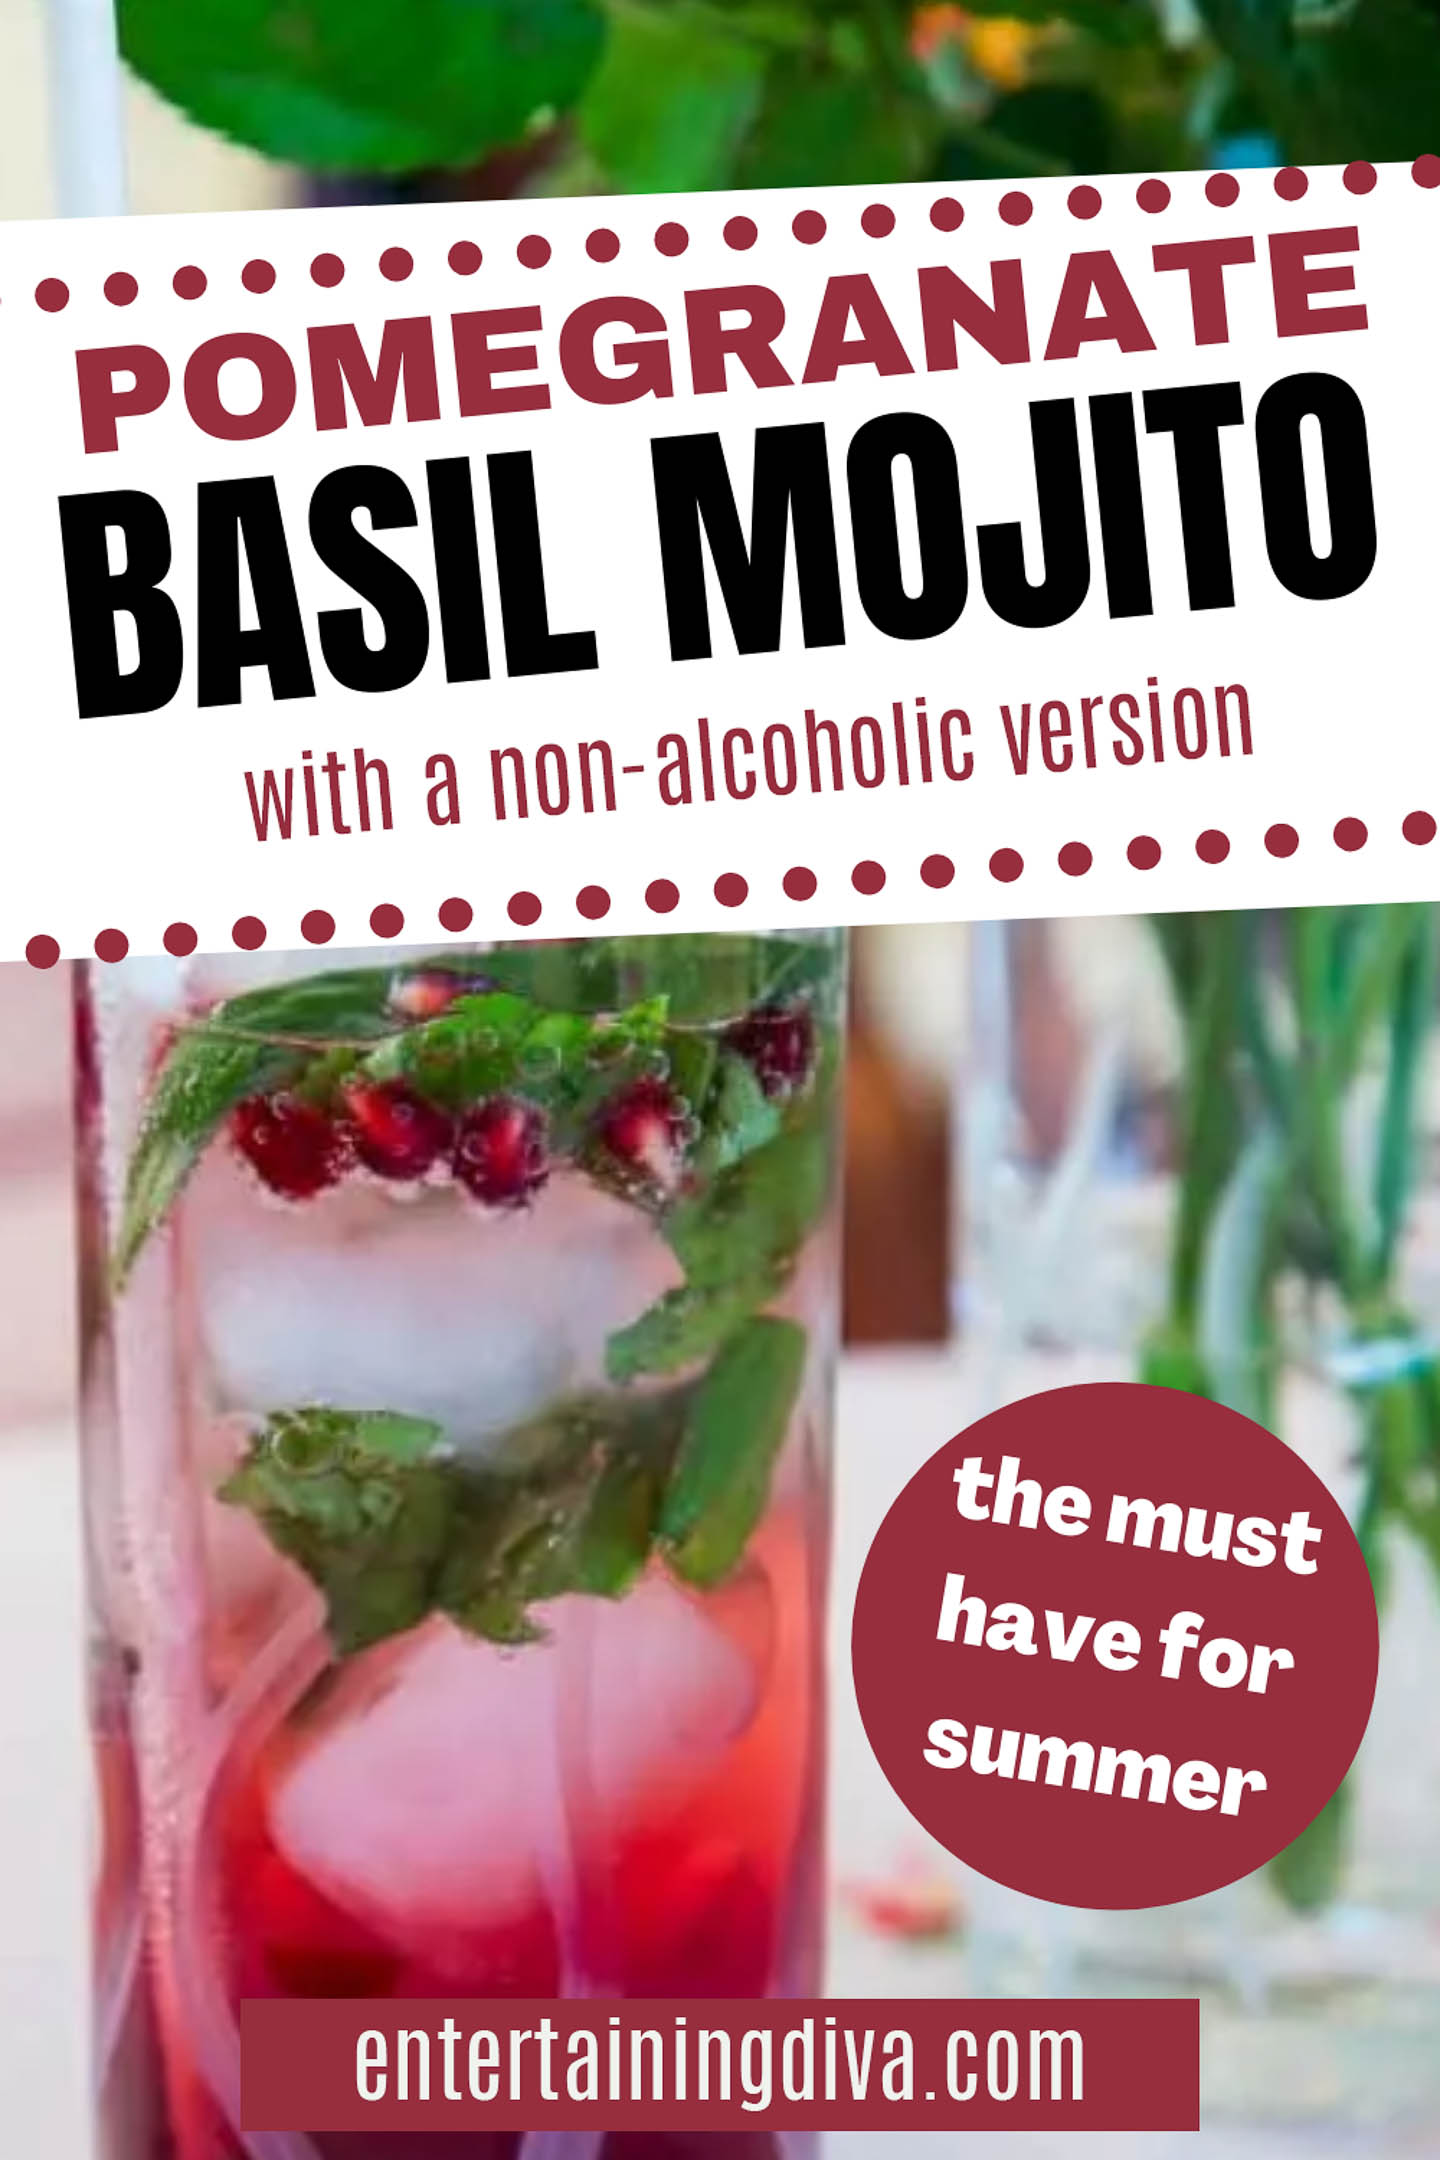 Pomegranate Basil Mojito with a non-alcoholic version